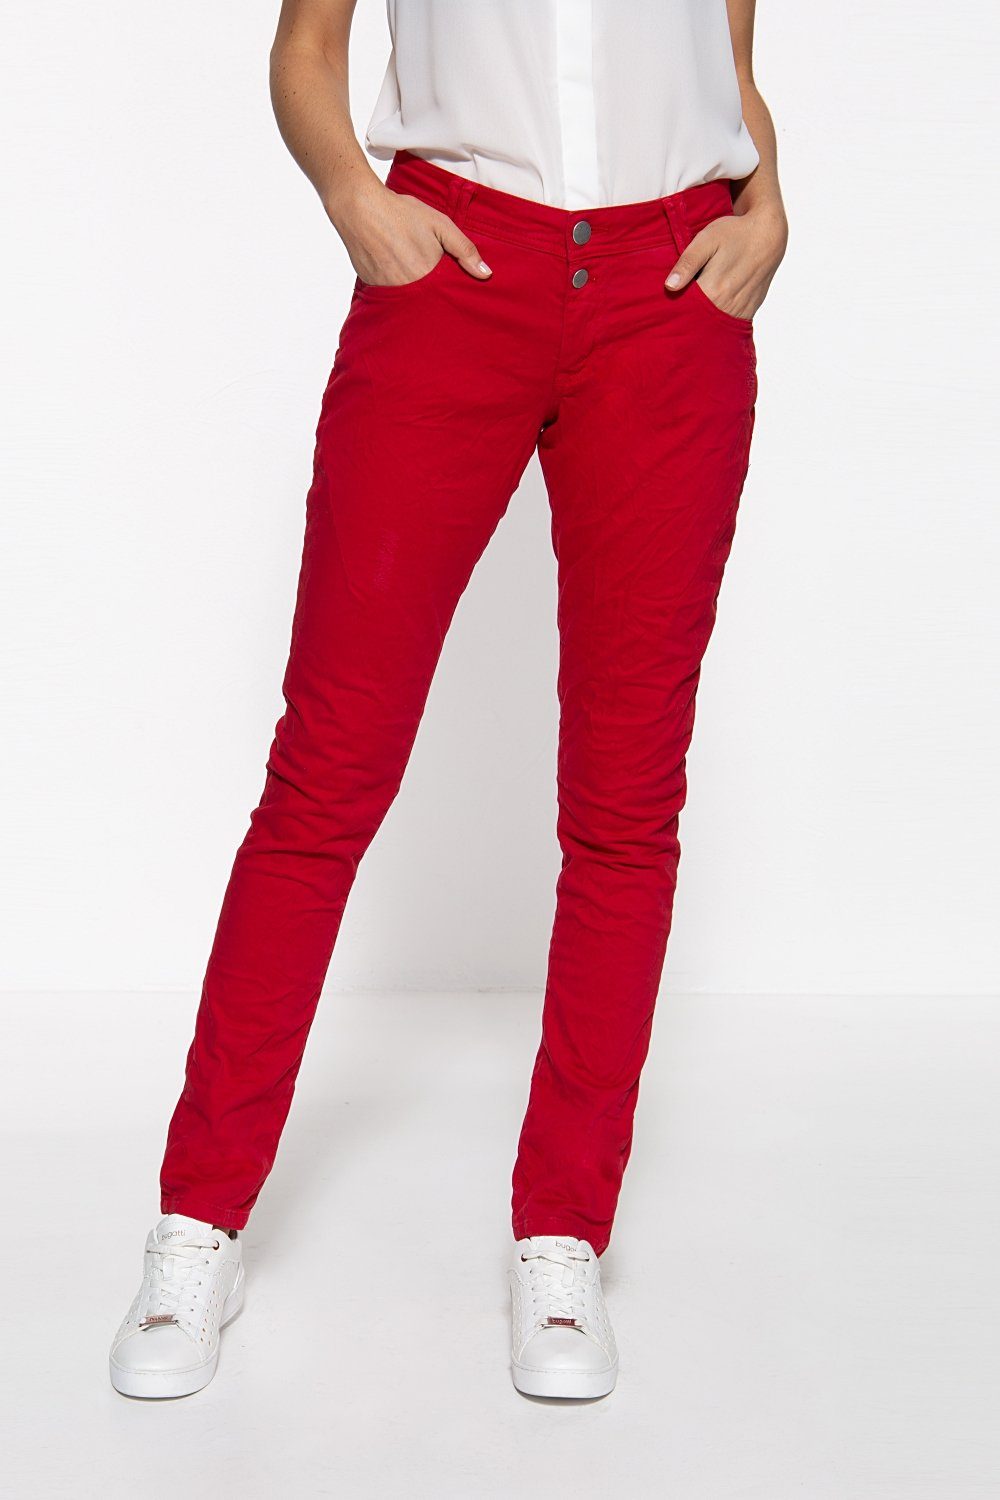 Bunte Jeans für Damen online kaufen » Bunte Jeanshosen | OTTO